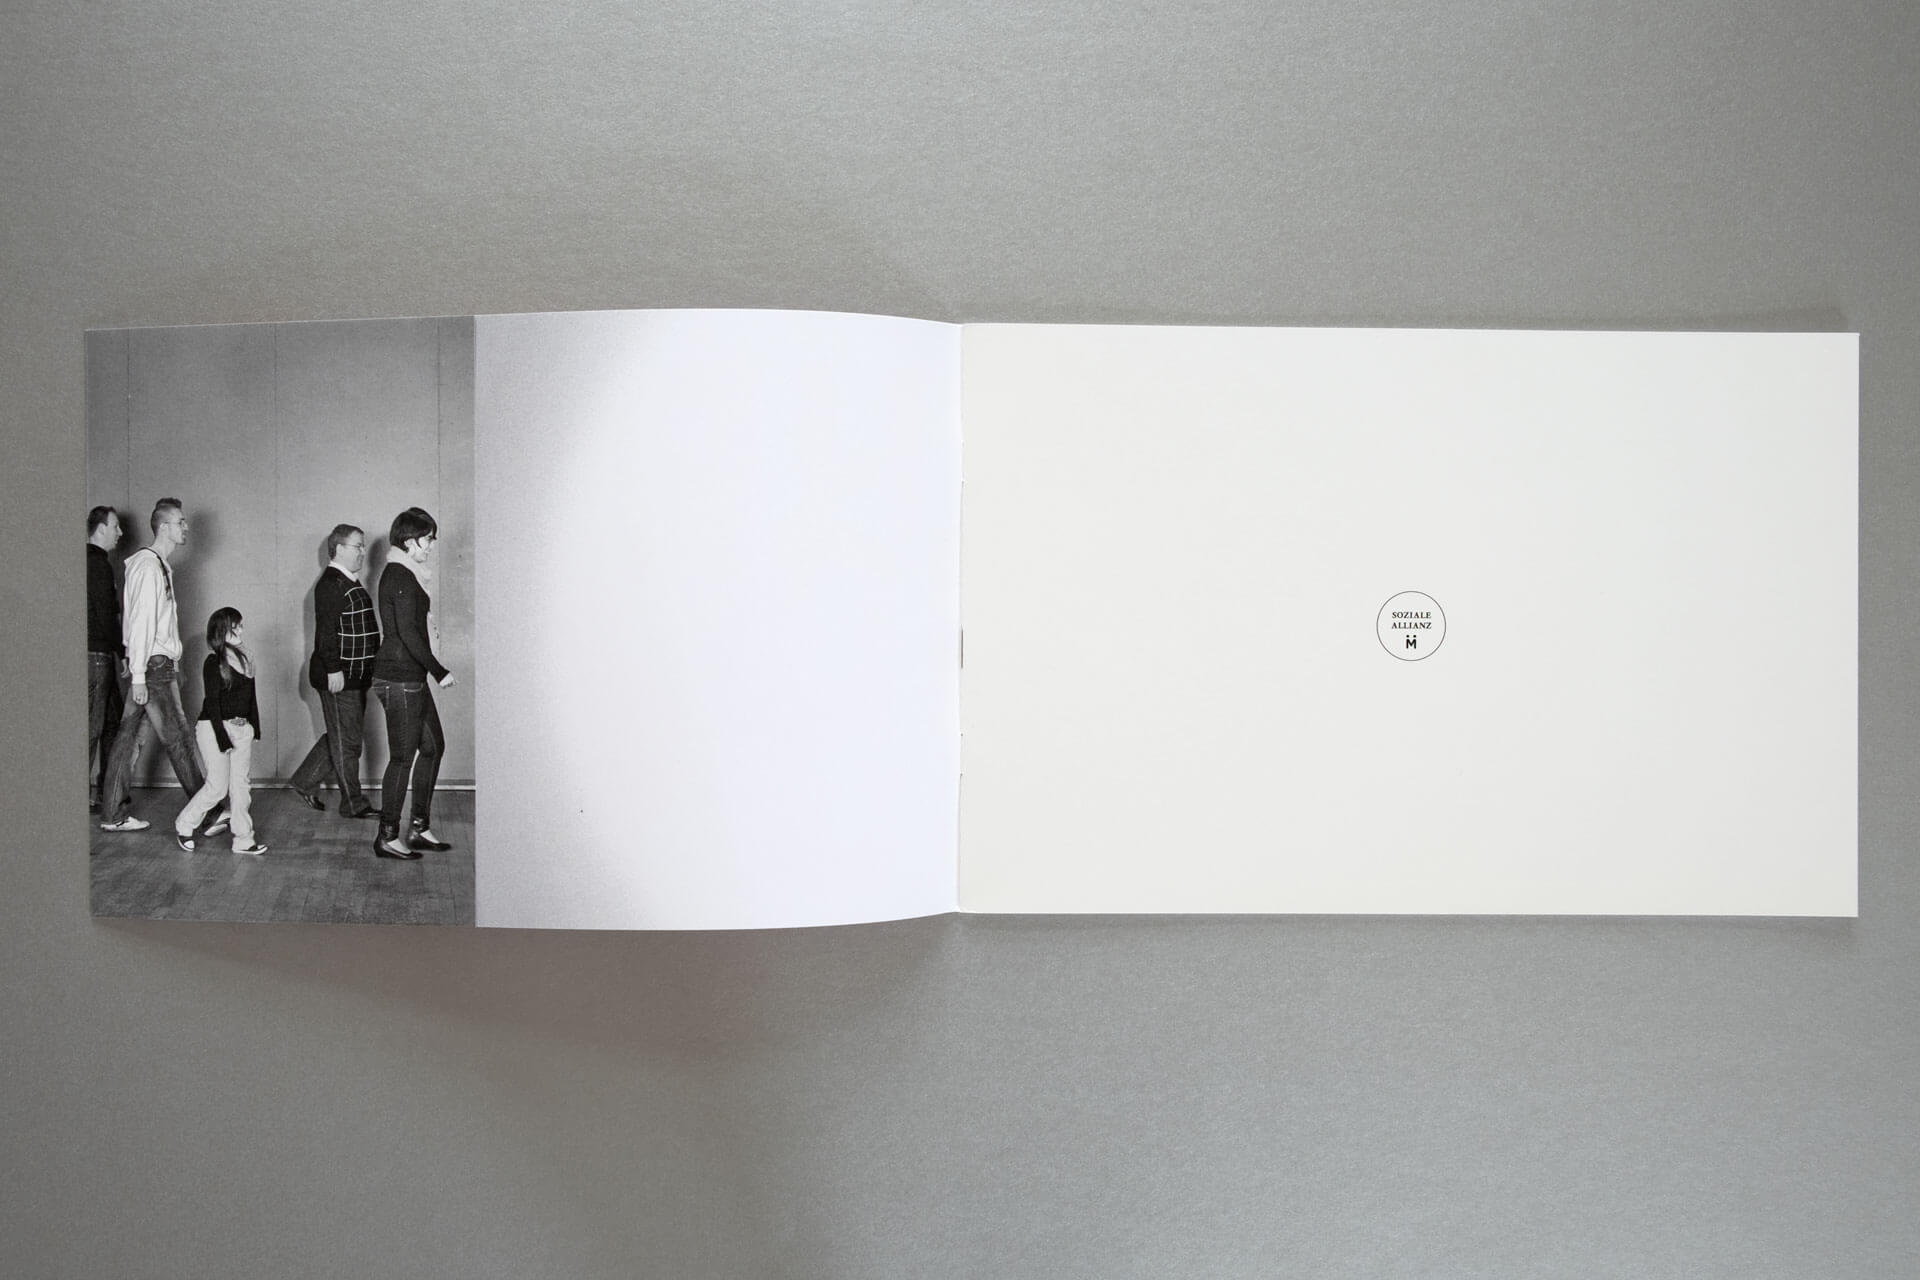 Umschlagklappe mit Foto von Menschen die auf eine Bühne zugehen und 1. Innenseite der Broschüre.